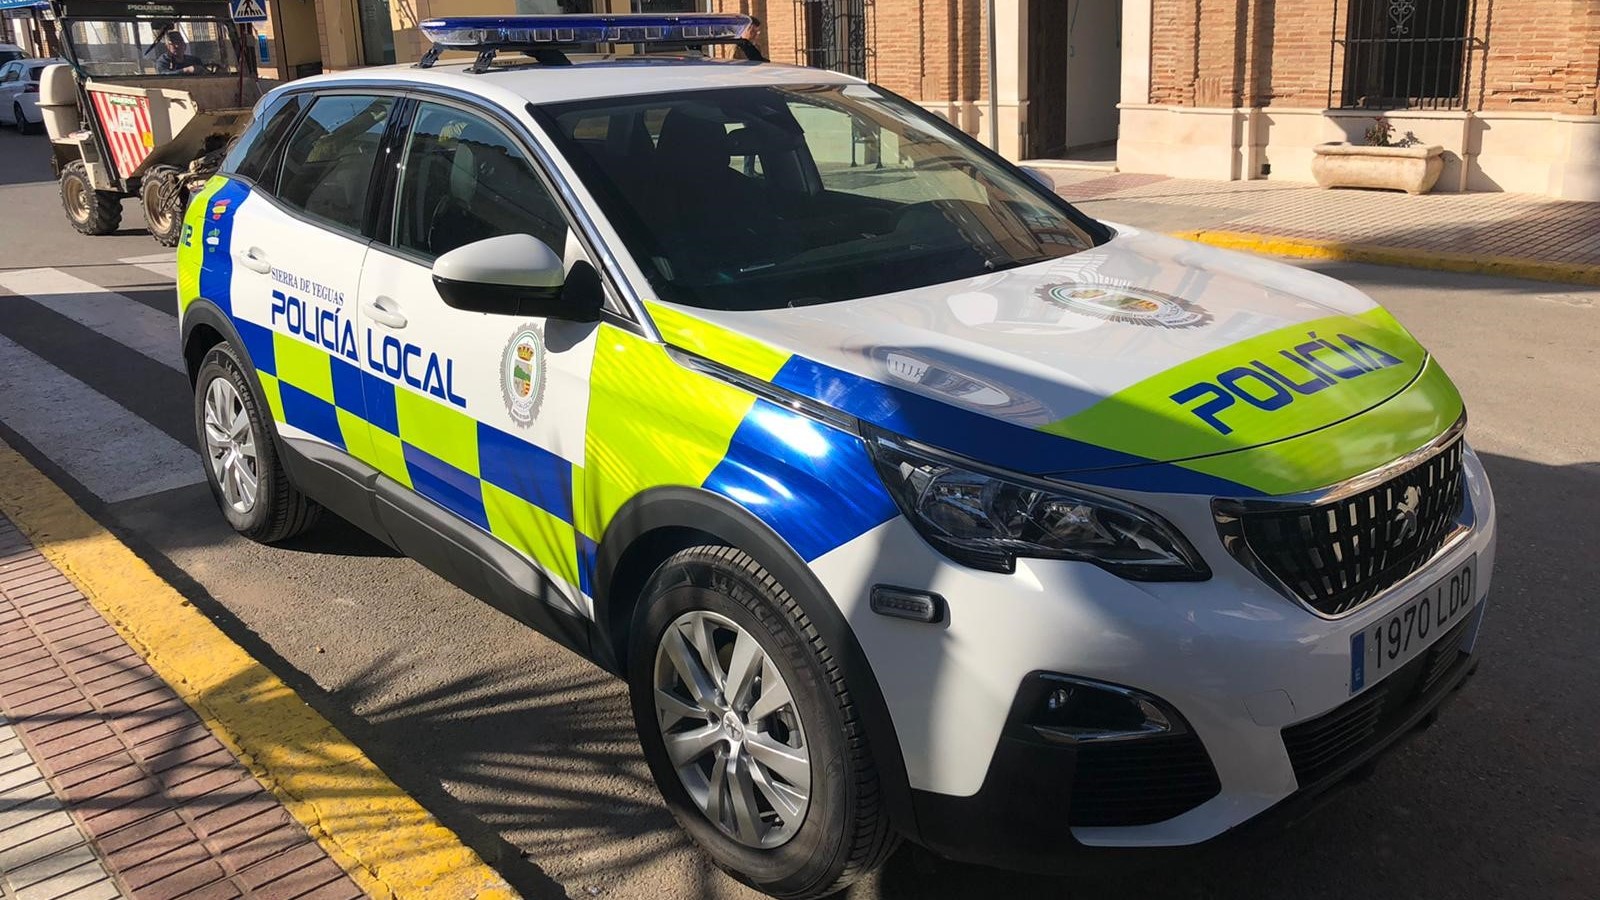 nuevo vehículo Policía Local Sierra Yeguas